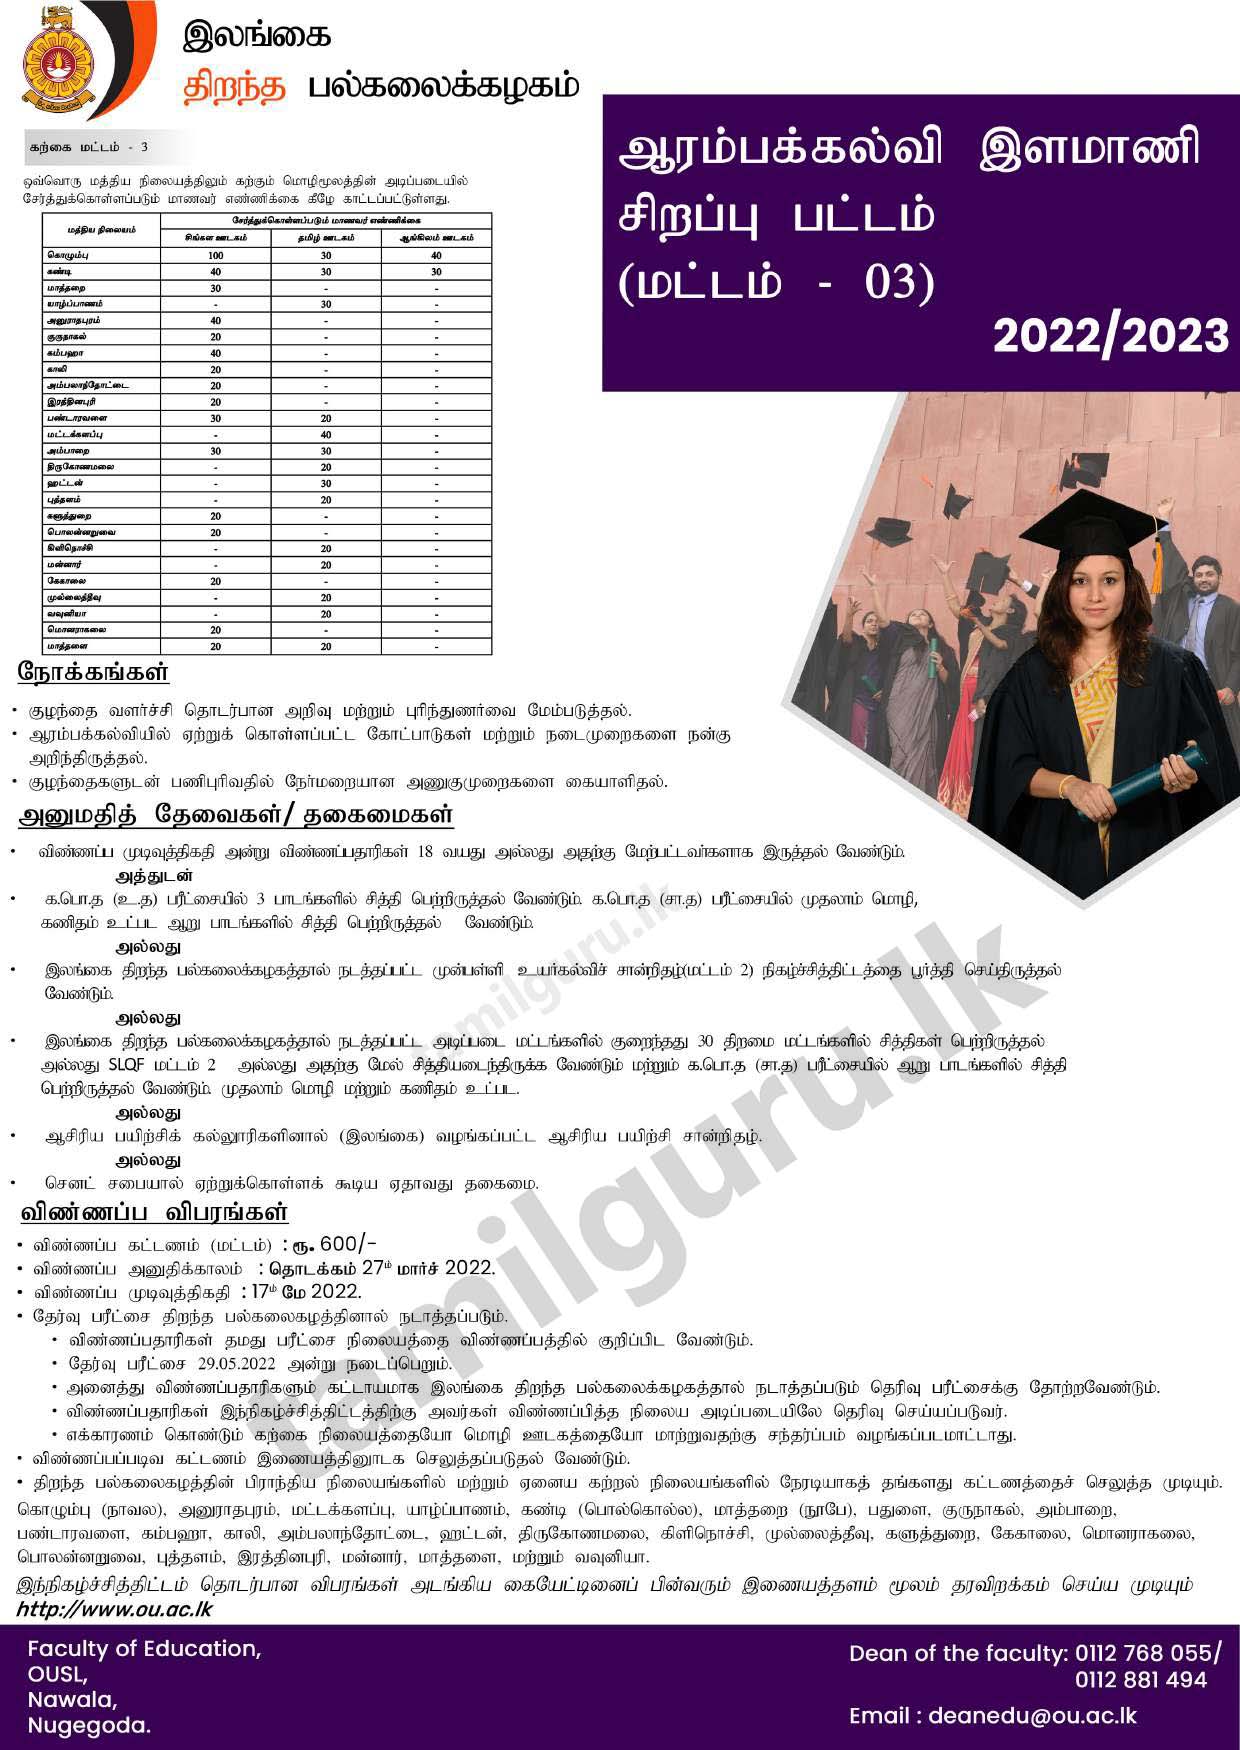 B.Ed in Primary Education Degree 2022 - Open University of Sri Lanka / ஆரம்பக் கல்வி தொடர்பிலான கல்விமாணி (சிறப்பு) பட்ட கற்கைநெறி - இலங்கை திறந்த பல்கலைக்கழகம்